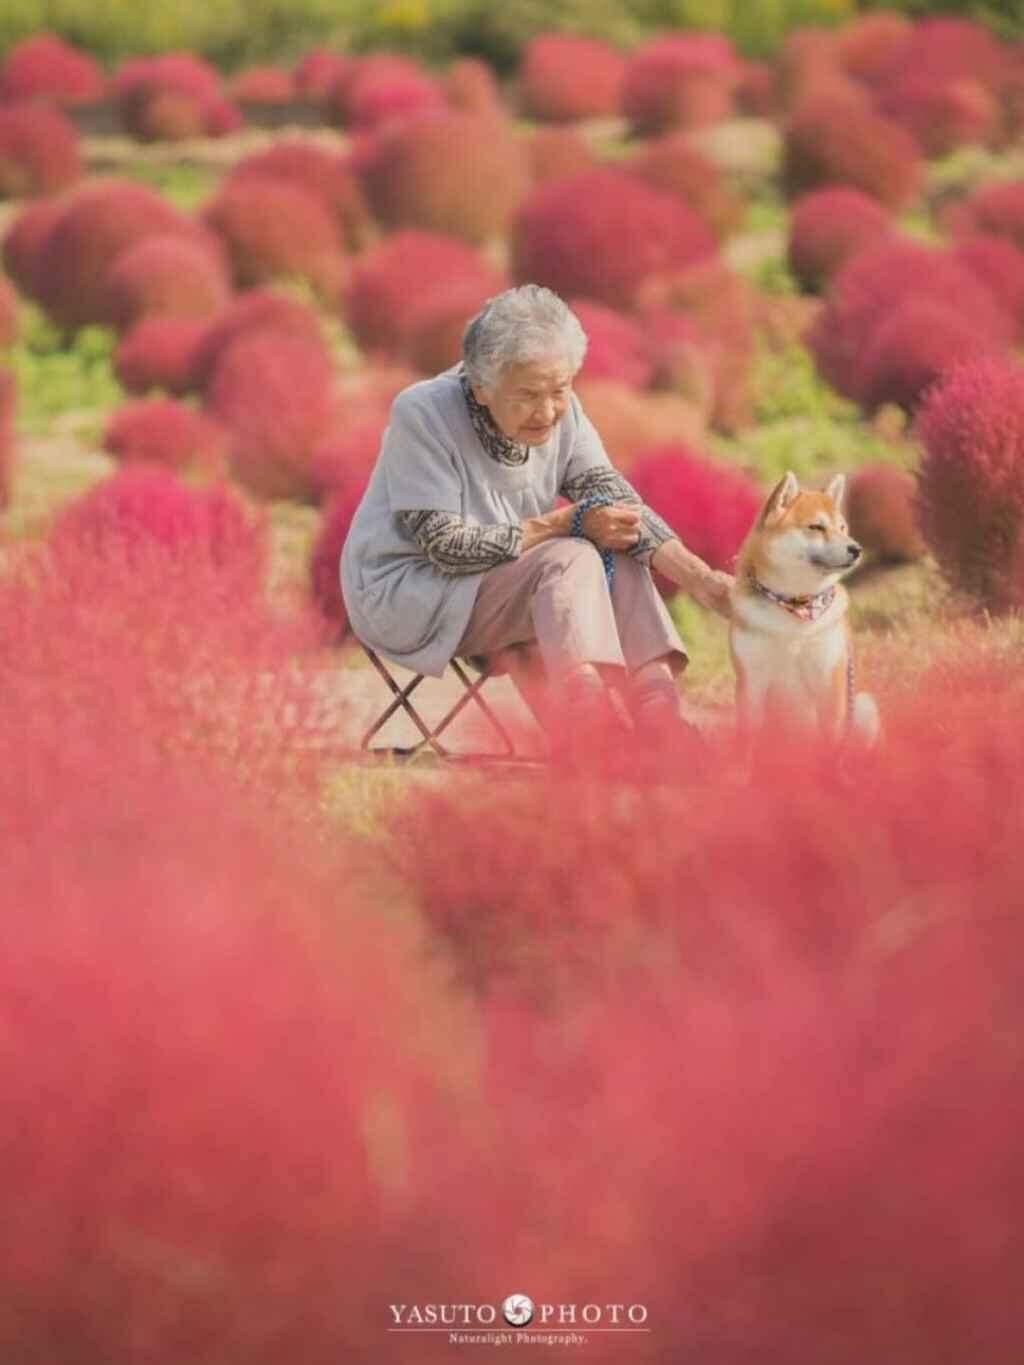 Neto captura imagens incríveis e emocionantes da amizade de sua avó com seu cão